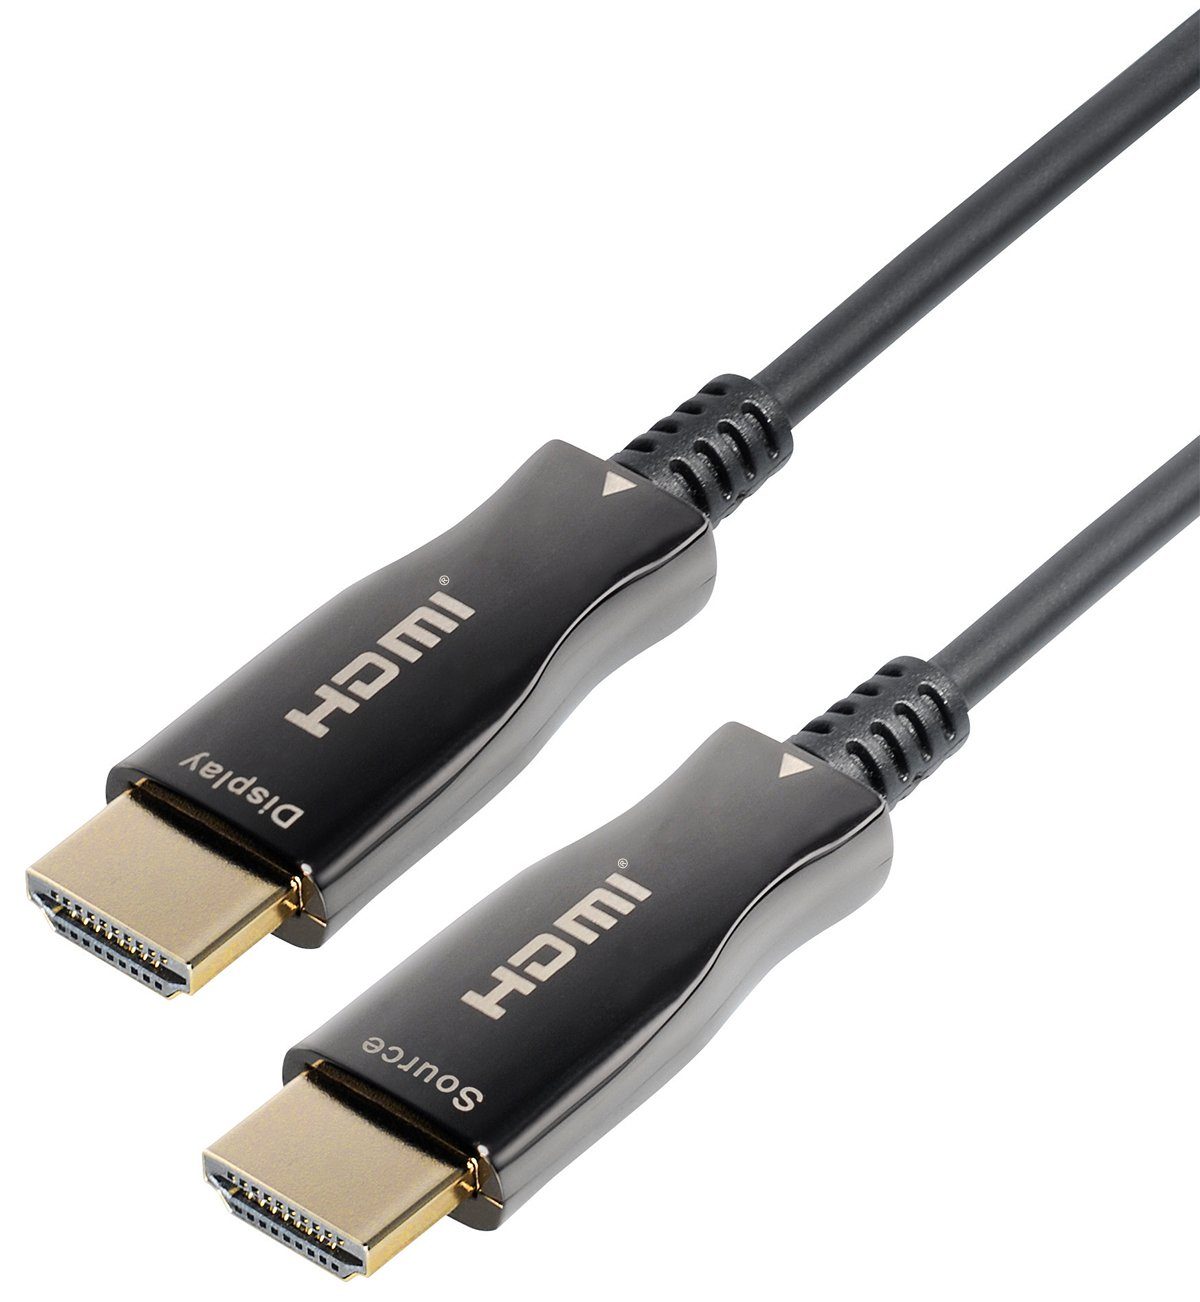 Maxtrack HDMI-Kabel, HDMI, Stecker auf Stecker (1000 cm), Aktives HDMI Glasfaser Kabel